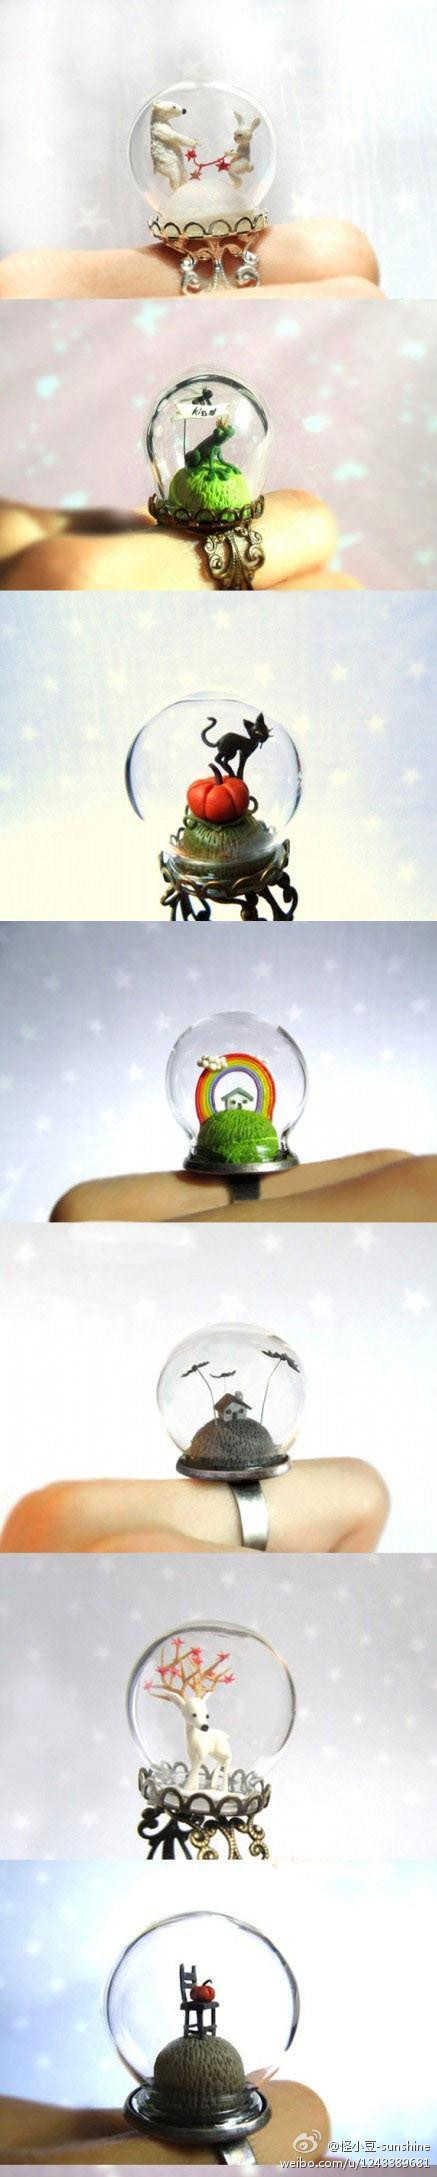 童话世界 精美水晶球戒指